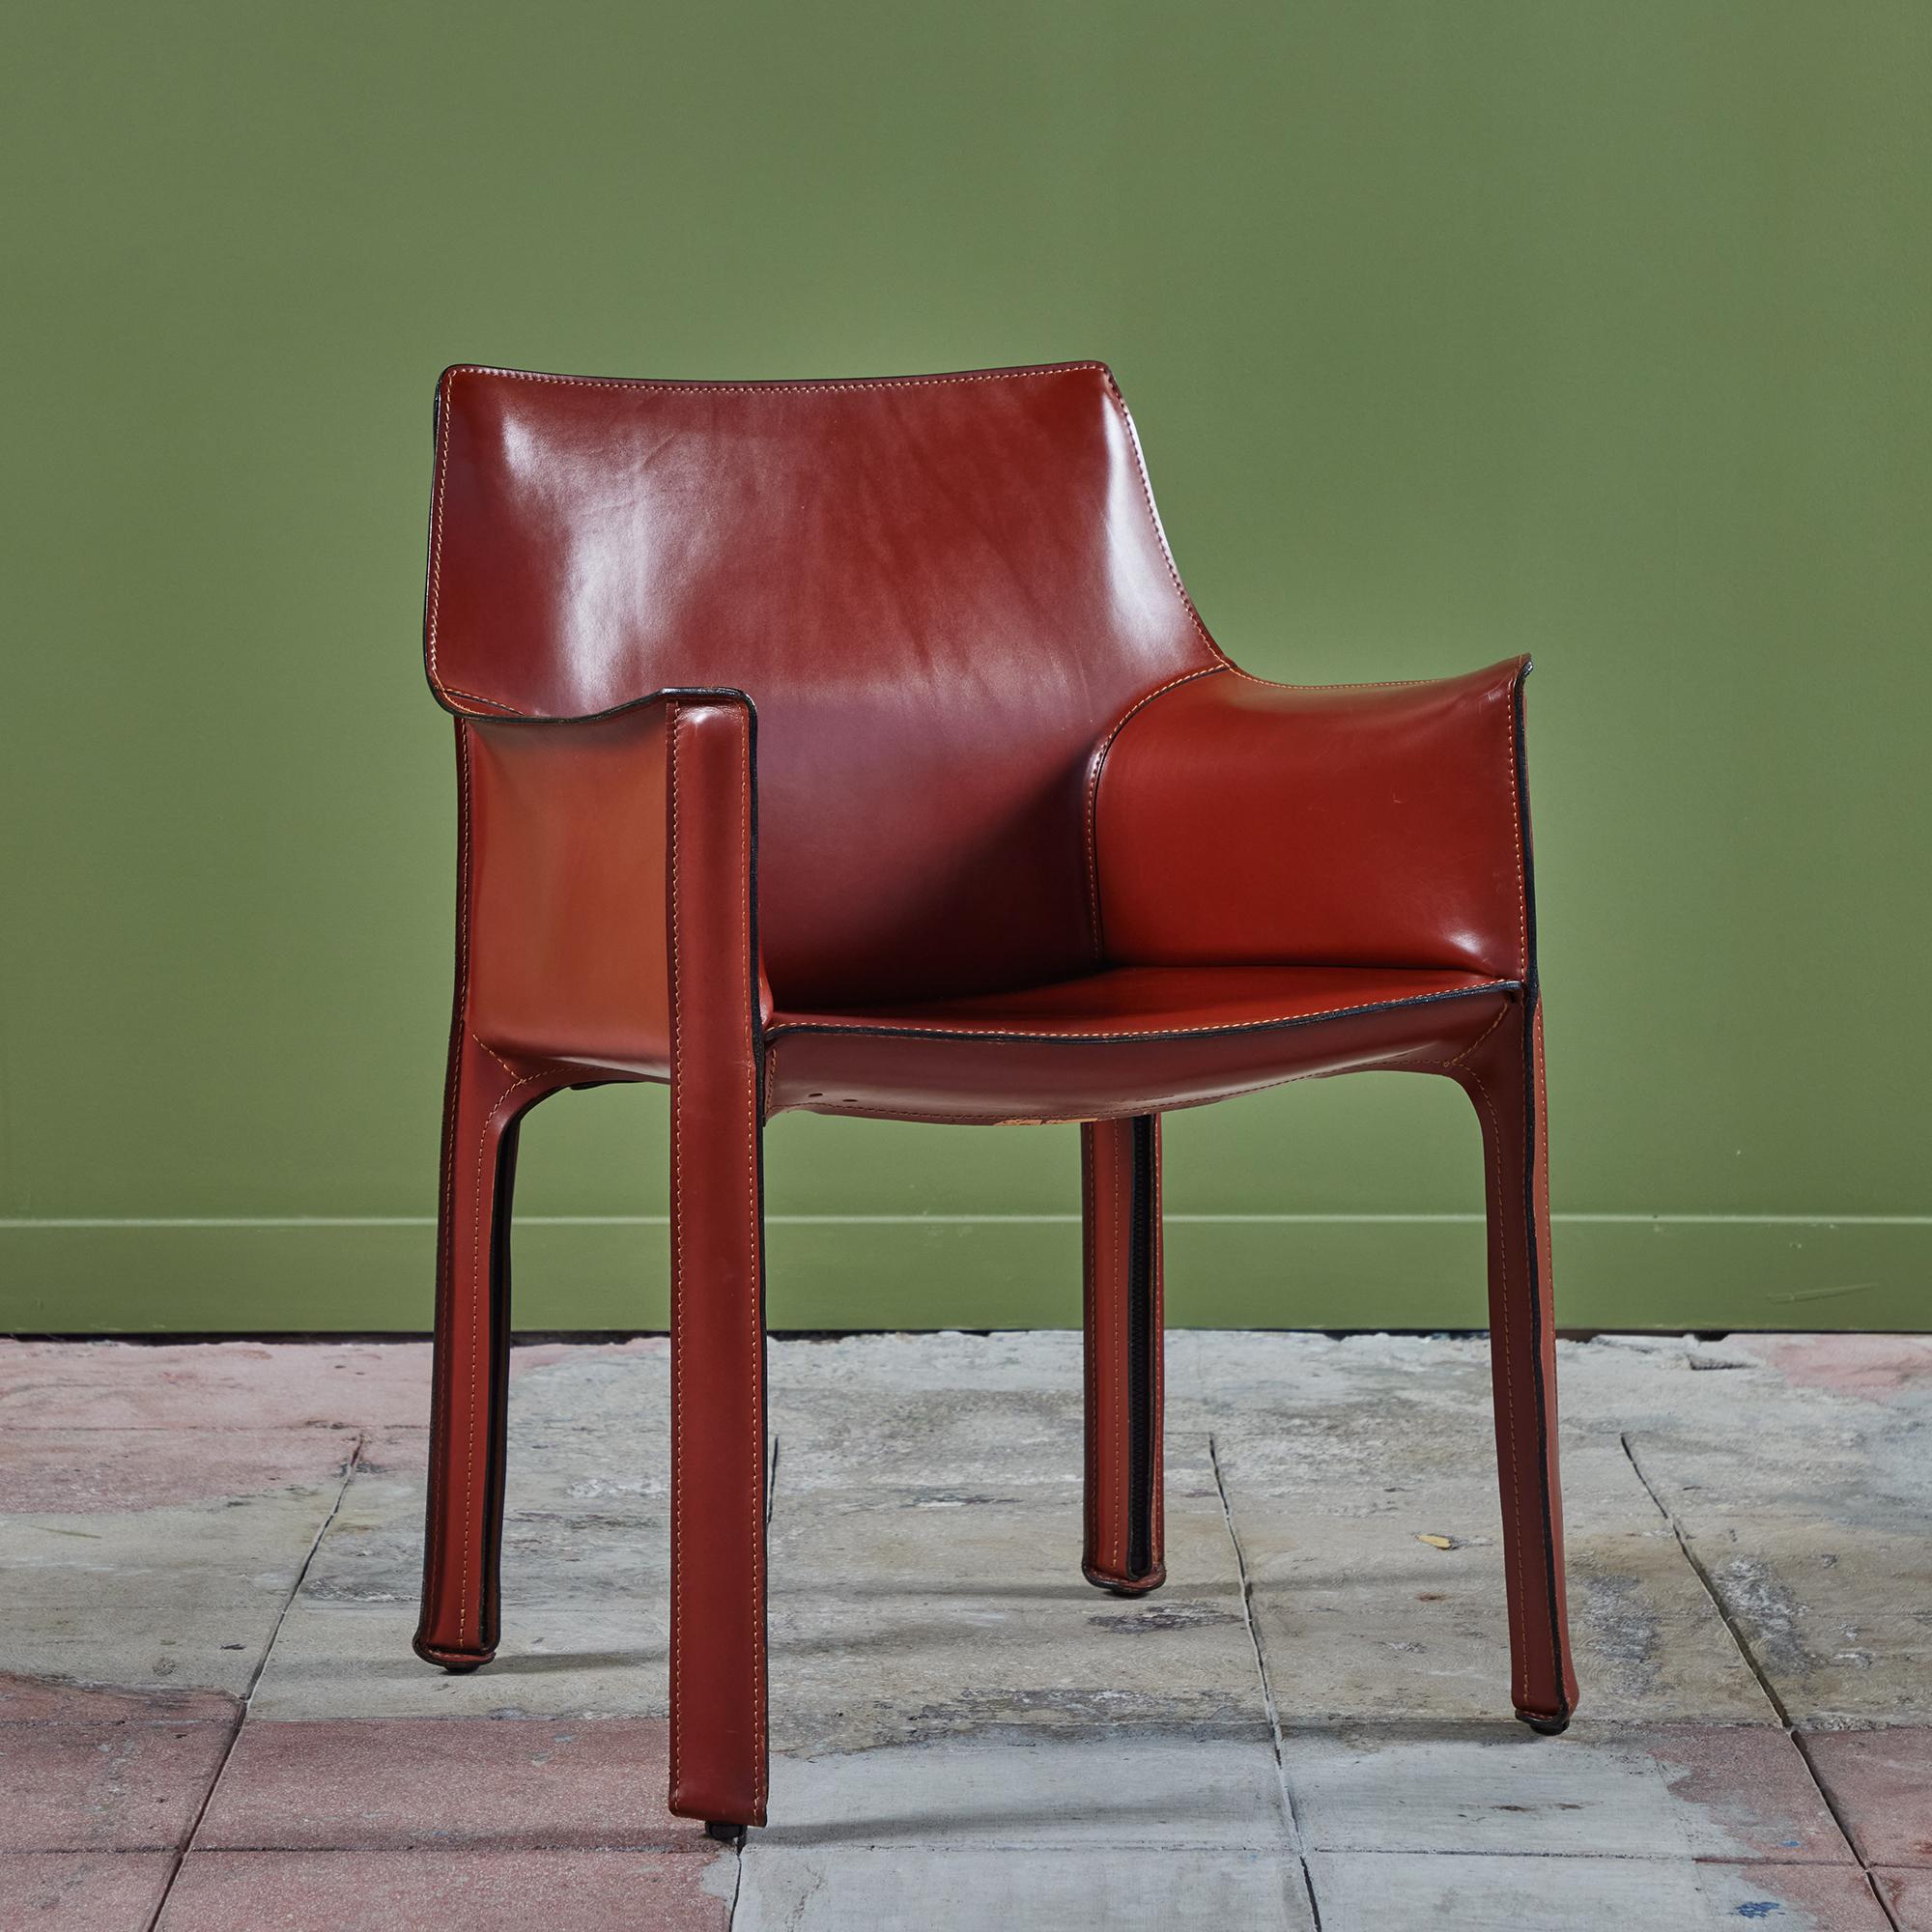 Cette chaise emblématique conçue par Mario Bellini pour Cassina vers les années 1970, en Italie, présente le cuir de selle rouge foncé d'origine, enveloppé dans un cadre en acier. Les jambes arrière sont dotées d'une fermeture à glissière noire. La